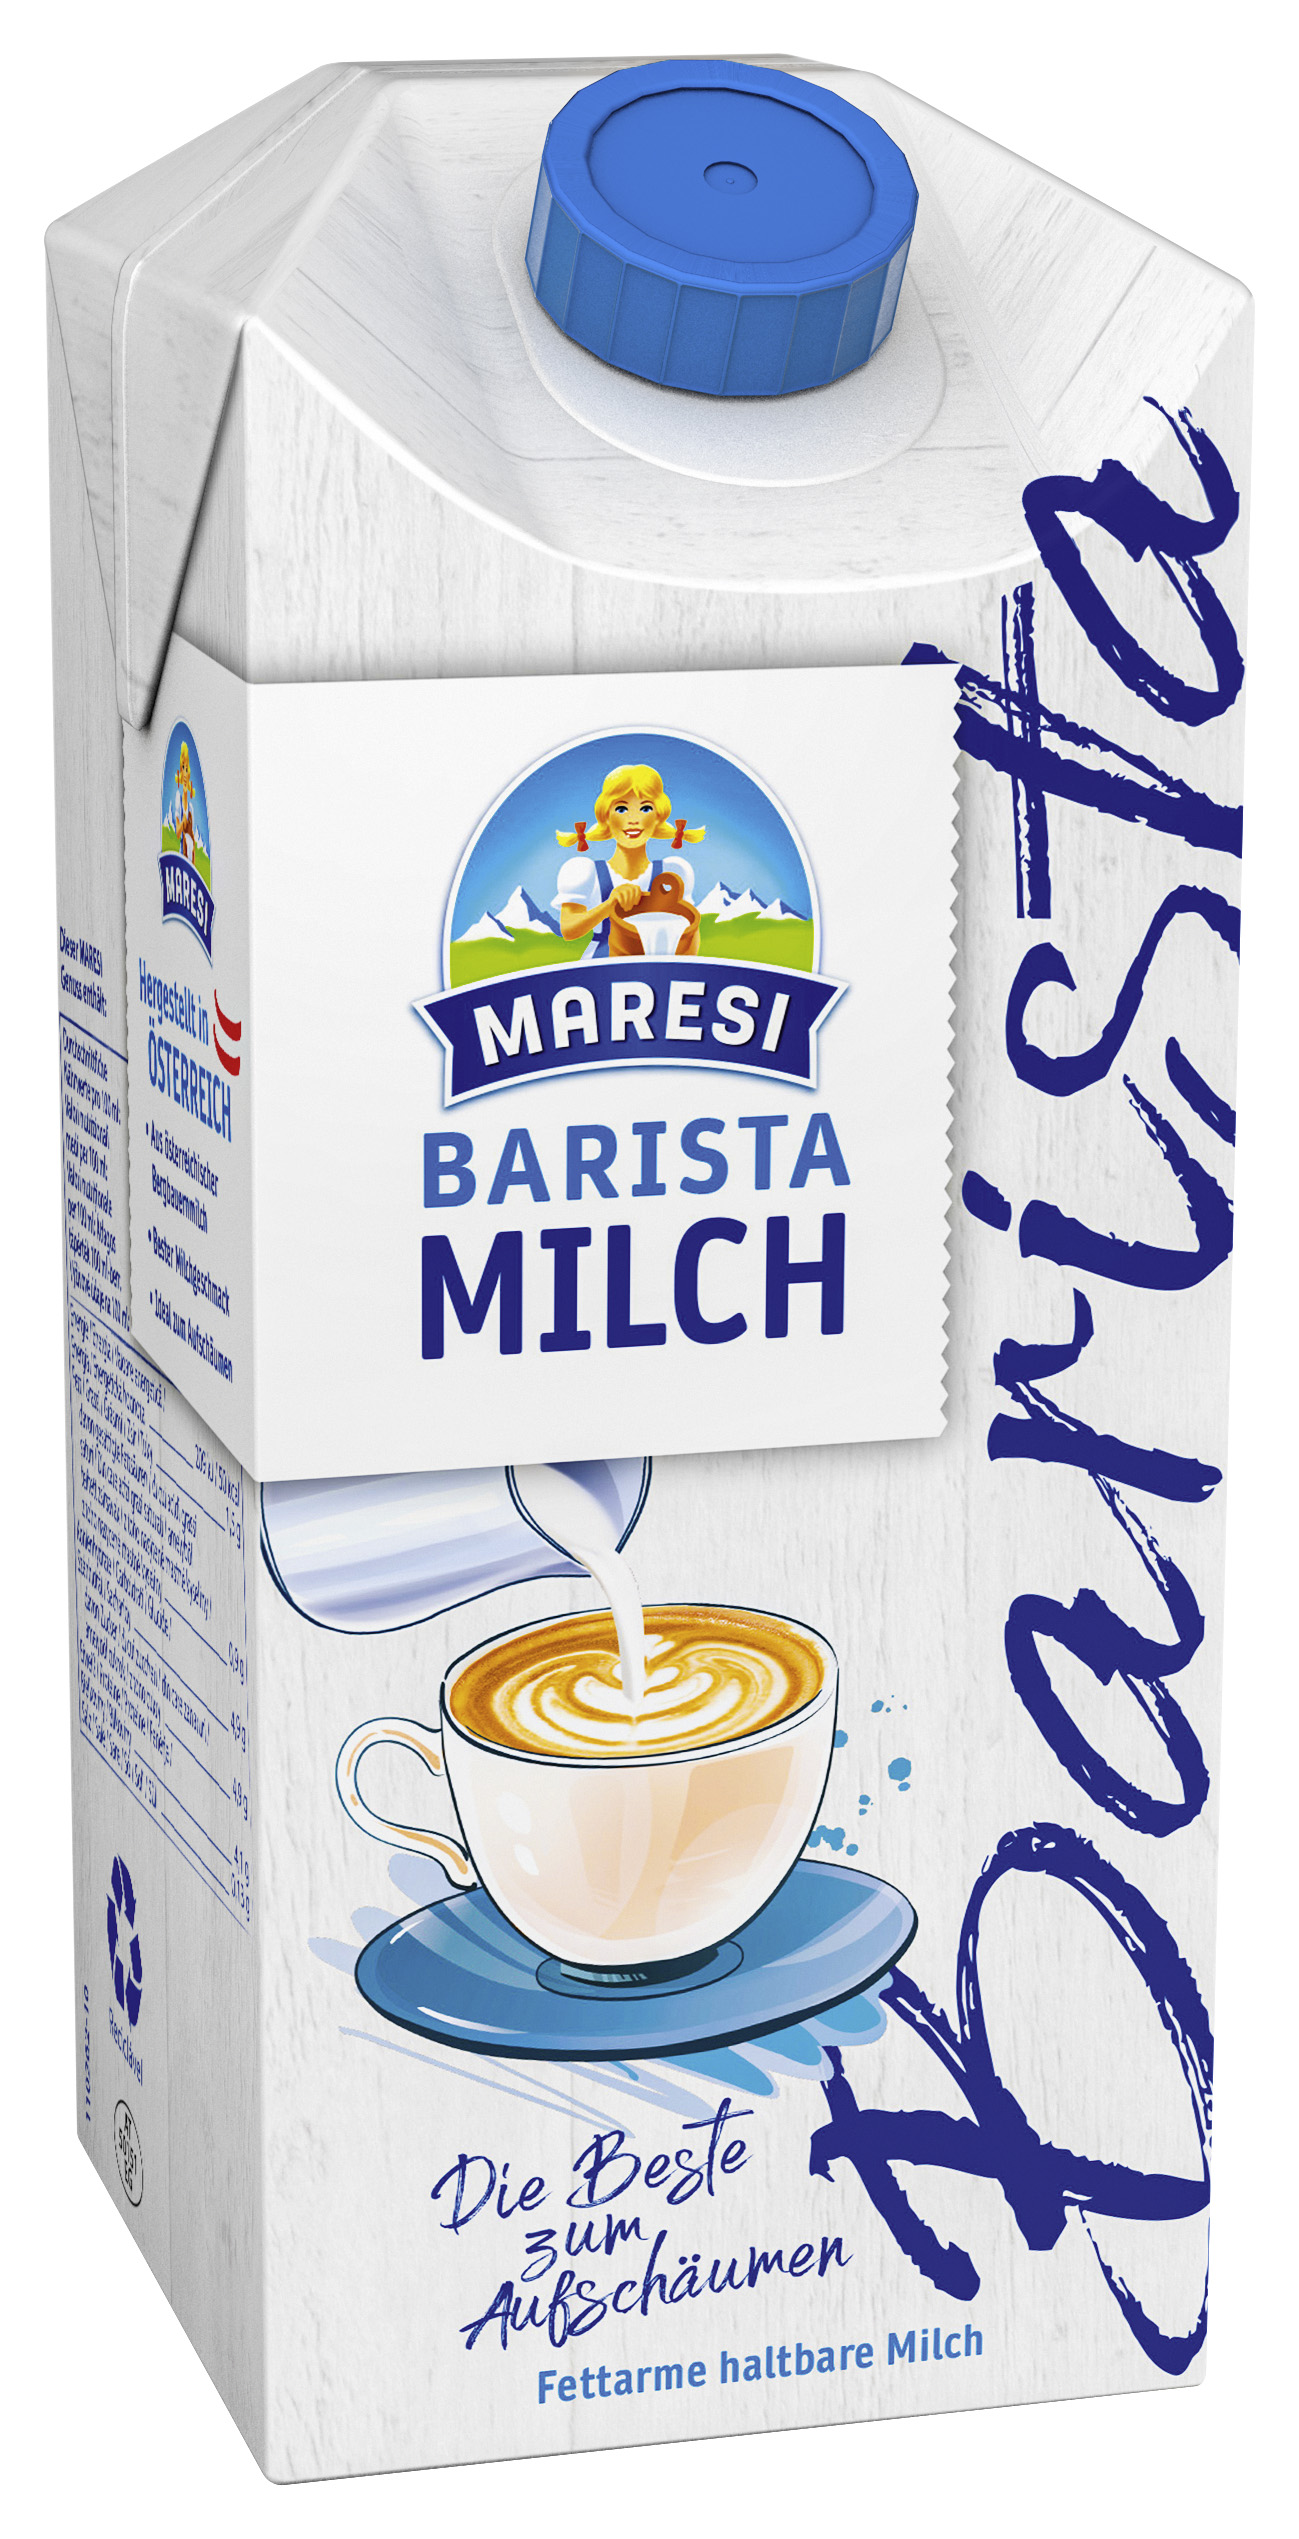 Maresi Barista Milch – perfekt zum Aufschäumen